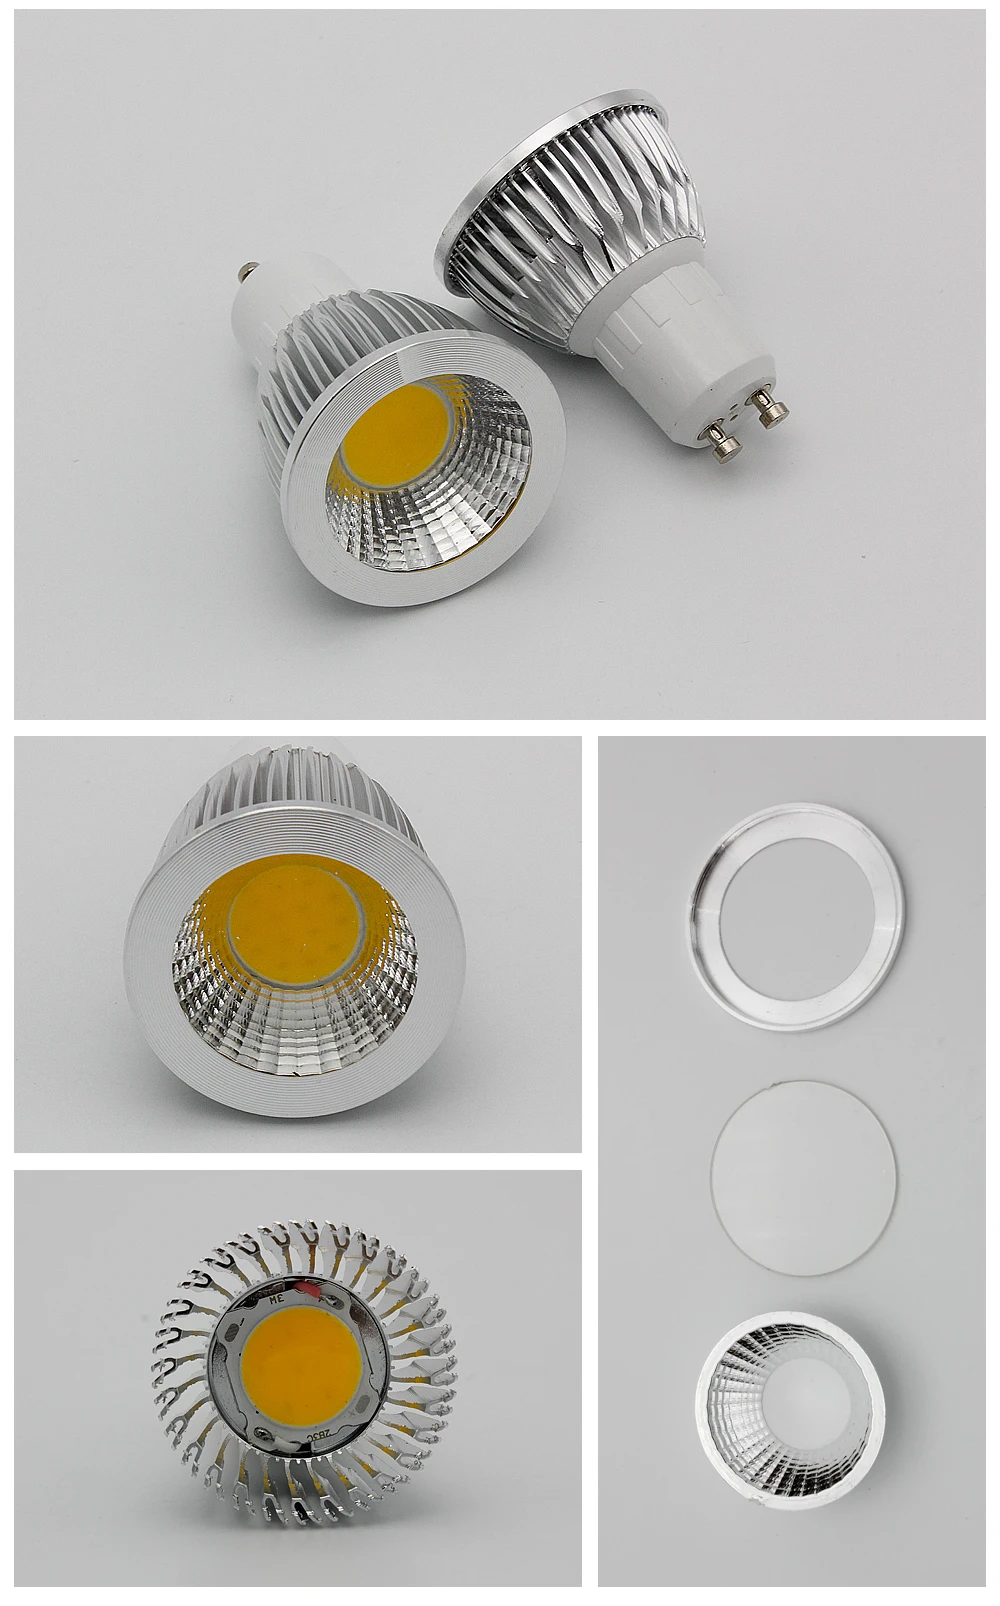 9 Вт 12 Вт 15 Вт GU10 светодиодный COB прожектор точечный регулируемый светильник Ламповые люстры Замена 30 Вт 40 Вт 50 Вт галогенная лампа AC 85-265 в